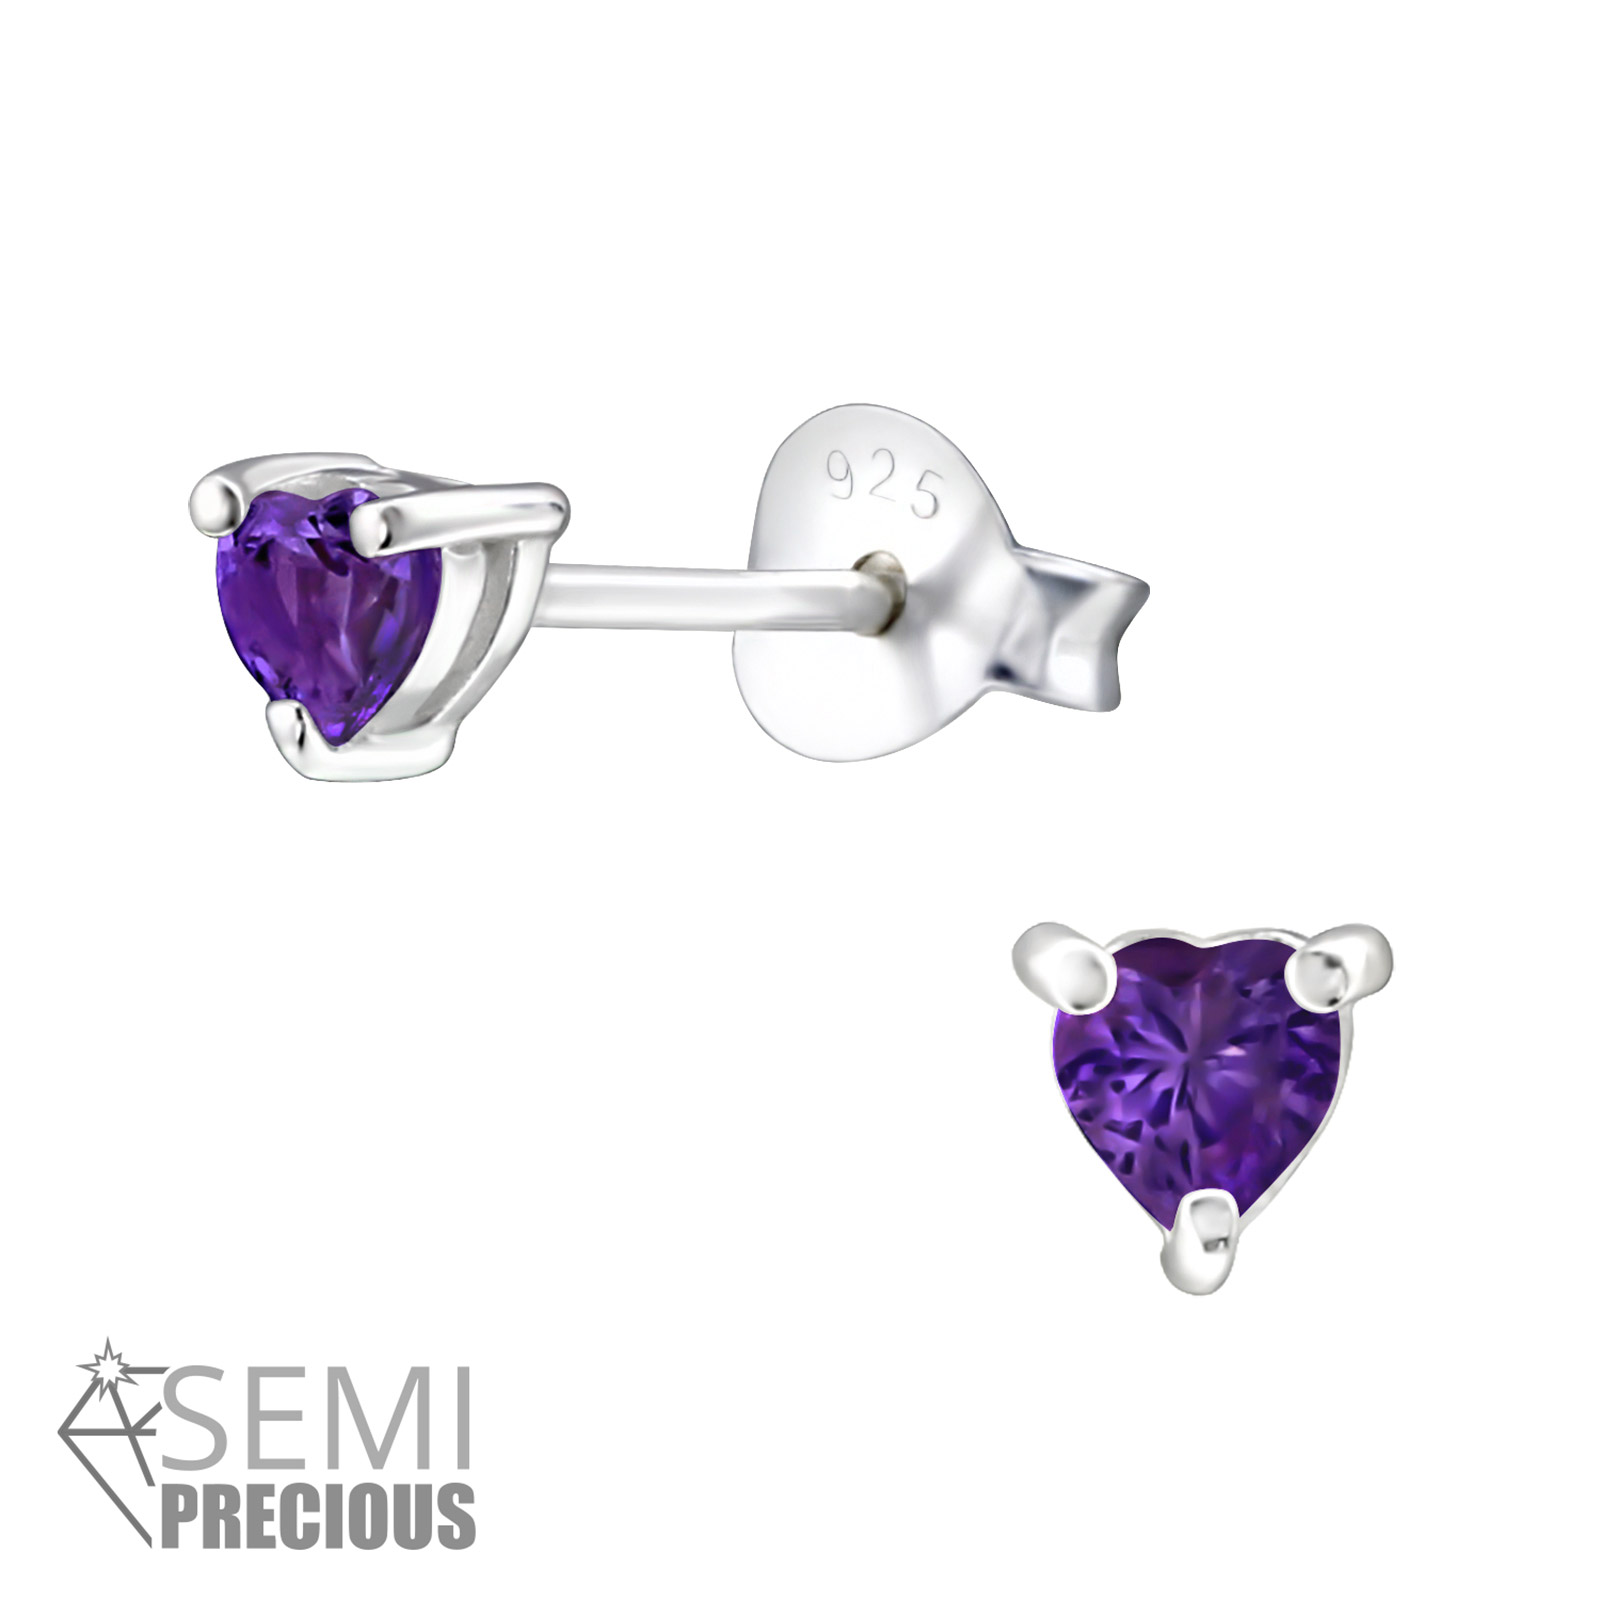 boucle-oreille-puce-pierre-fine-véritable-améthyste-violette-argent-plaqué-rhodium-coeur